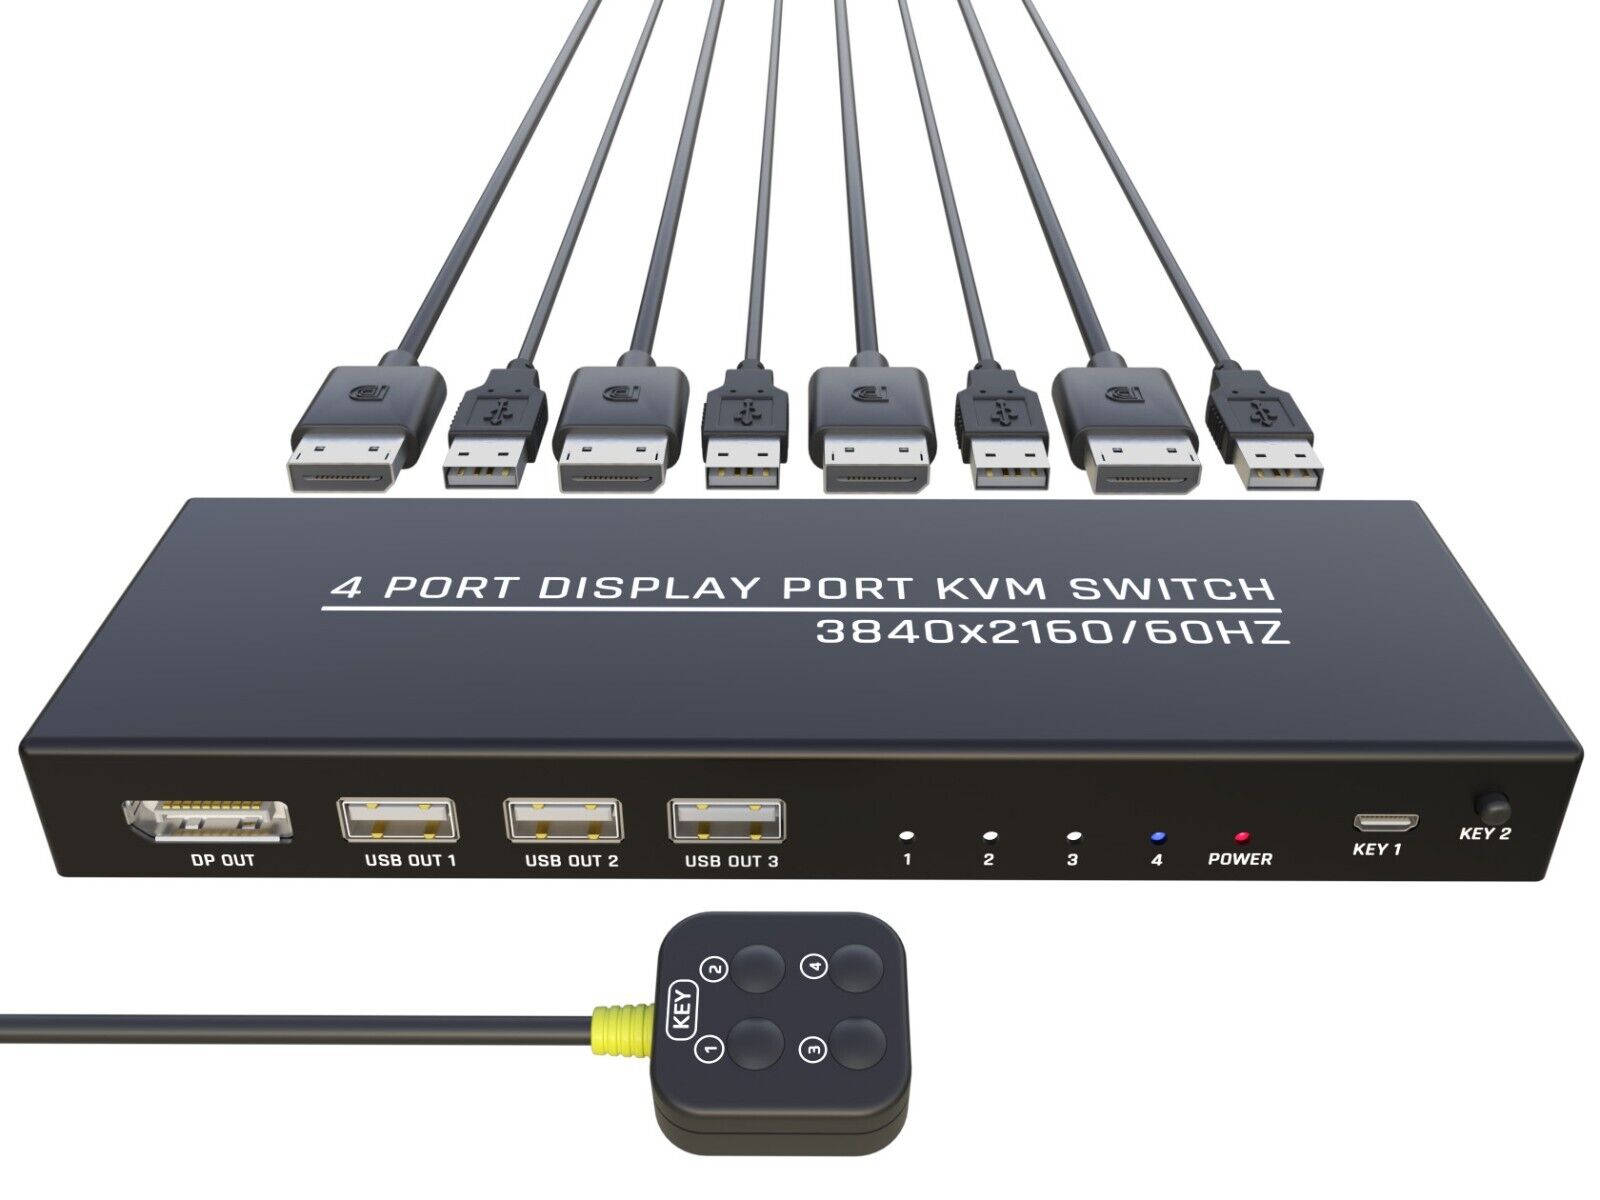 Displayport Kvm Switch, 4 Port 4K/60Hz DP Usb Kvm, 4 PC share 1 monitor, mouse..